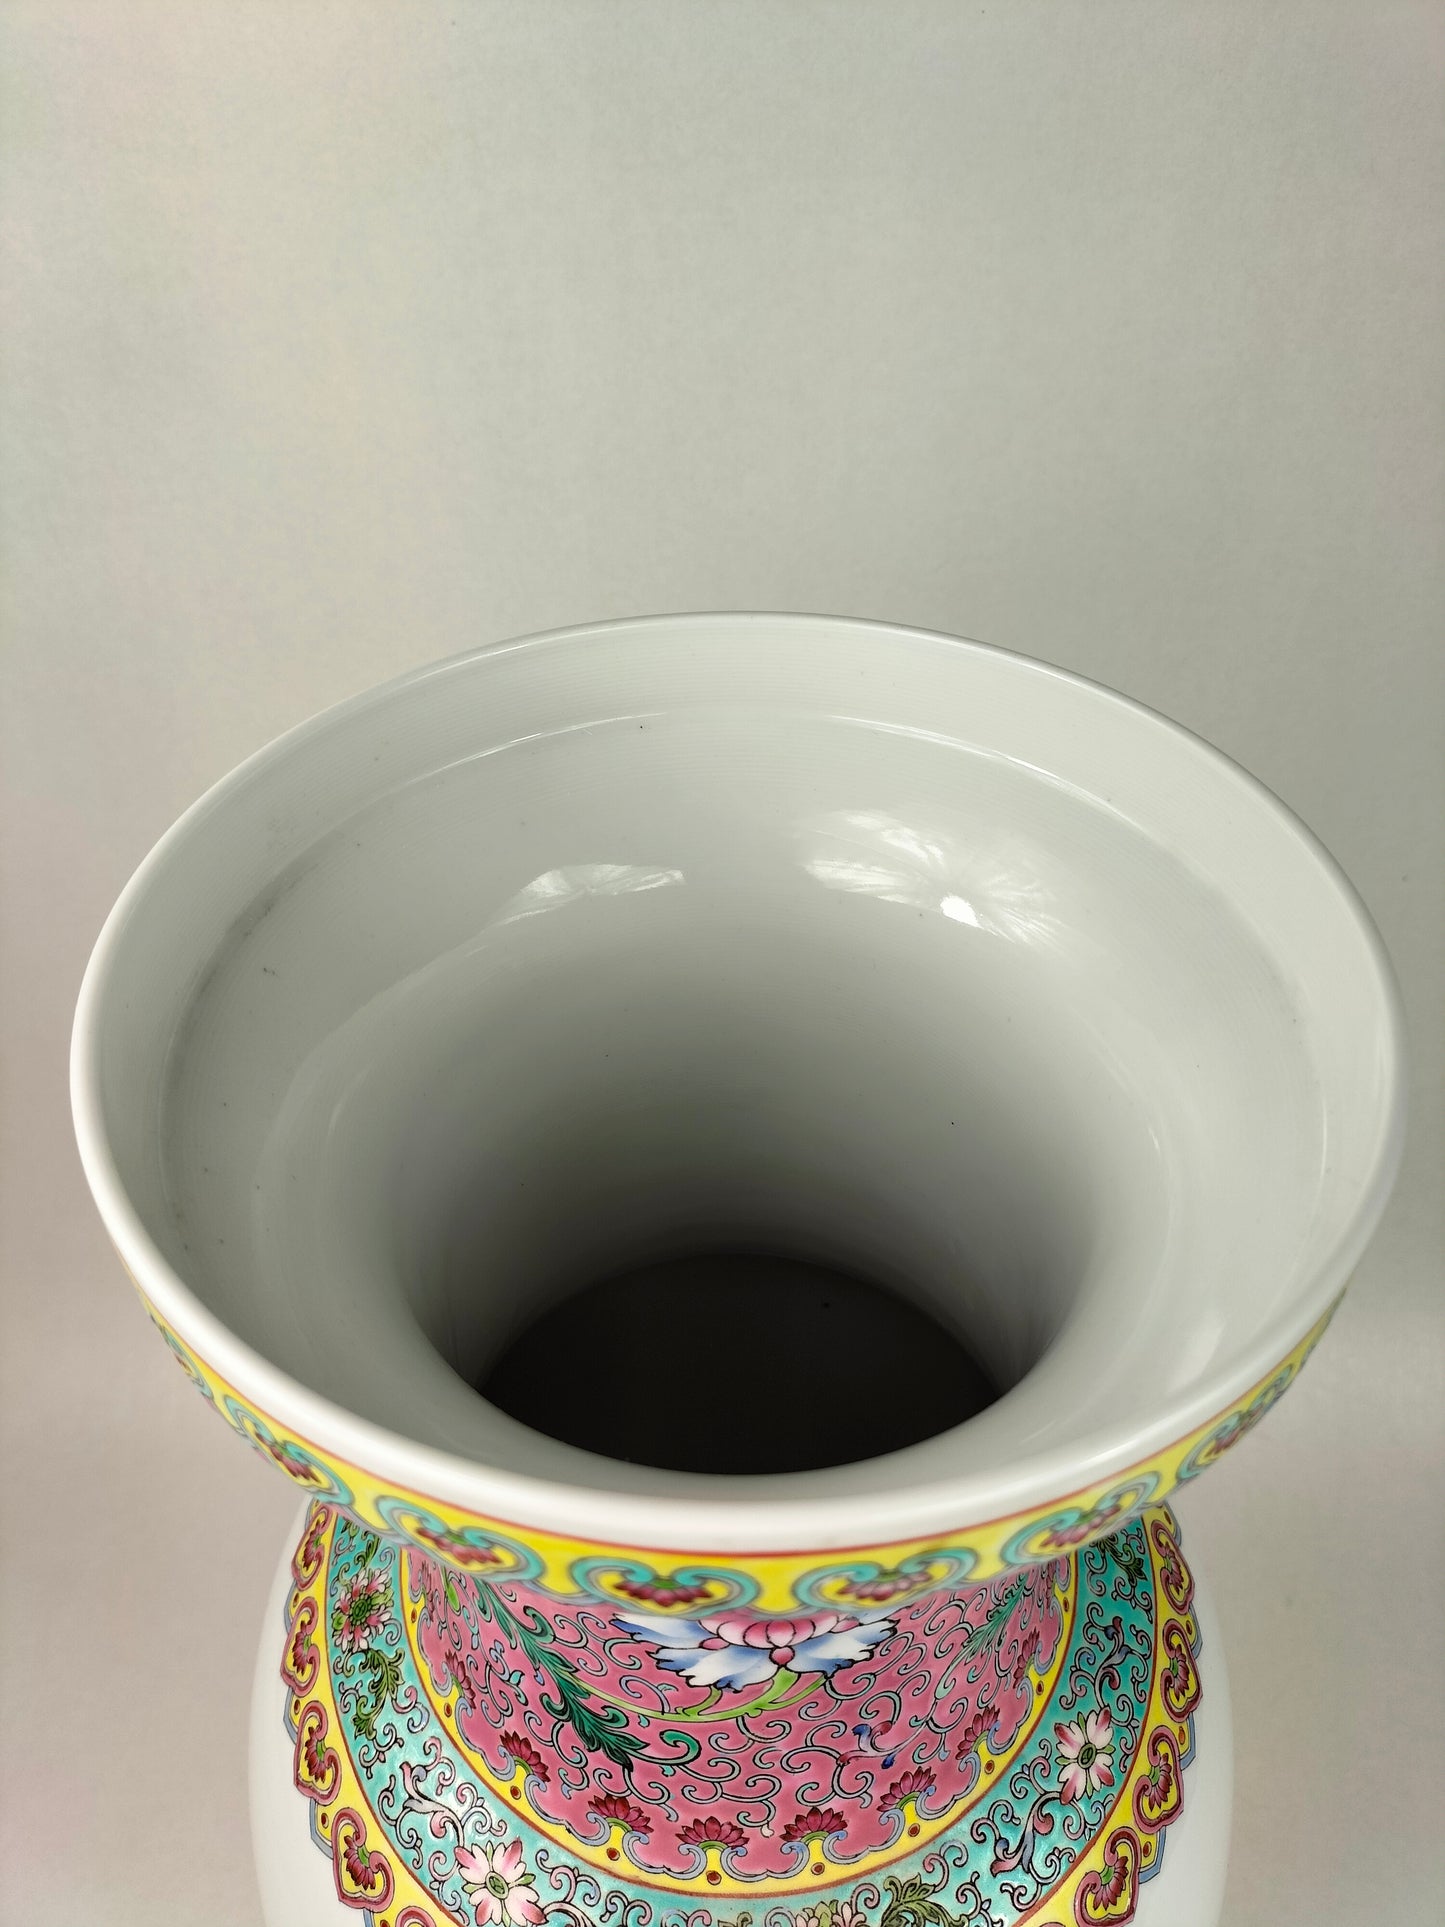 Grande vaso chinês da família rosa decorado com flores // Jingdezhen - século XX